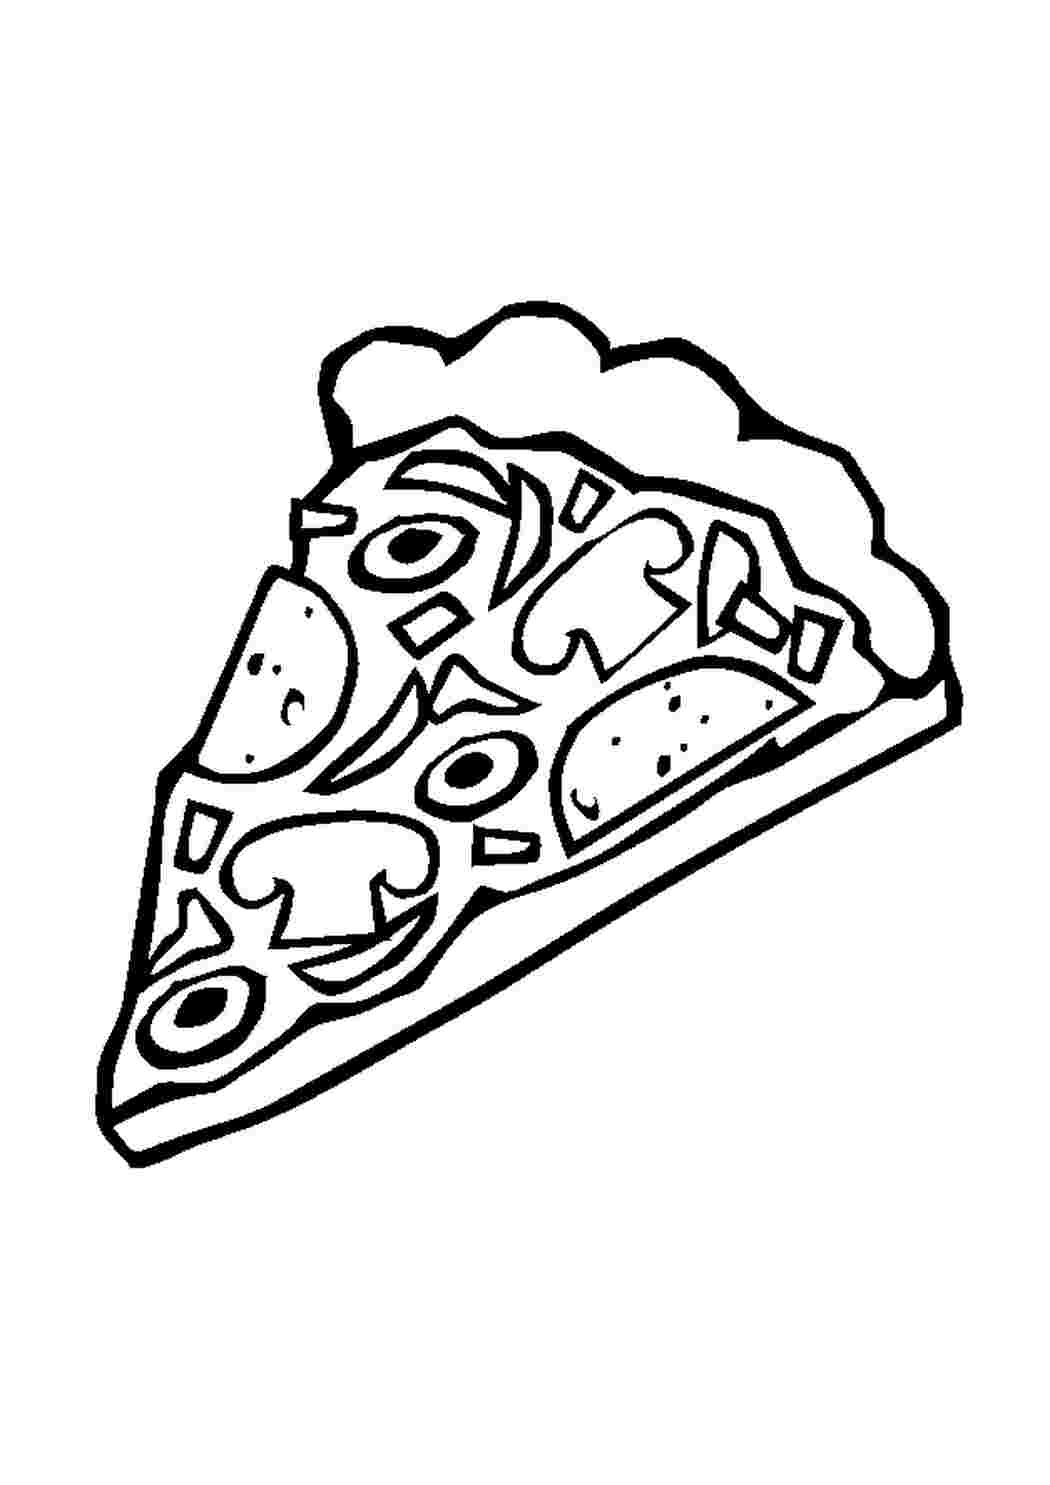 Пицца черно белая. Раскраска пицца. Пицца раскраска для детей. Раскраска еда пицца. Кусок пиццы раскраска для детей.